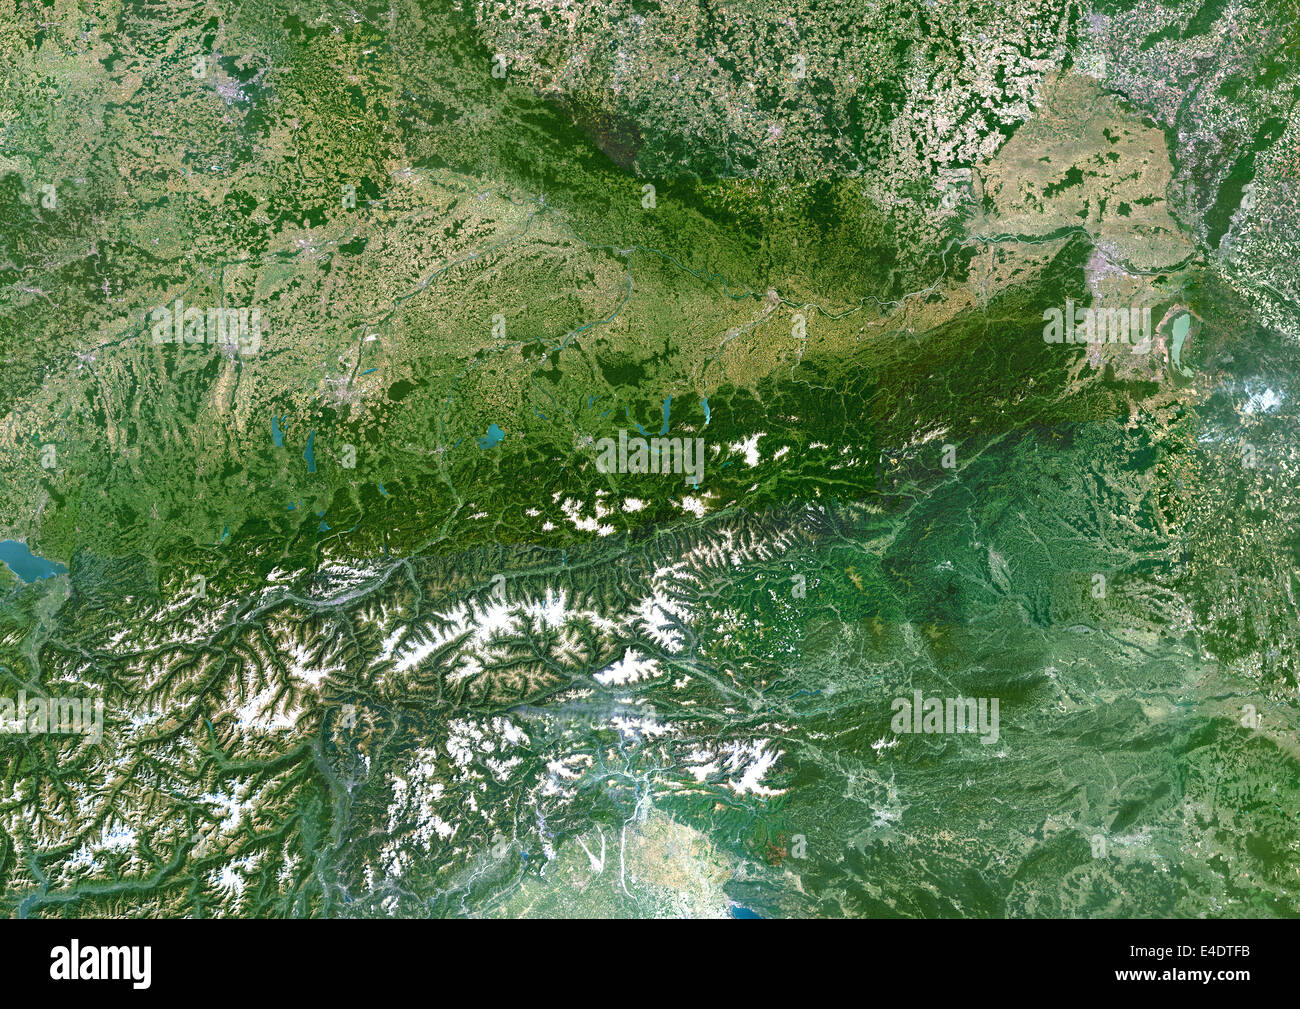 Austria, True Color satellitare immagine. True color satellitare immagine dell'Austria. Il Nord è in alto. La vegetazione è verde, la neve è whit Foto Stock